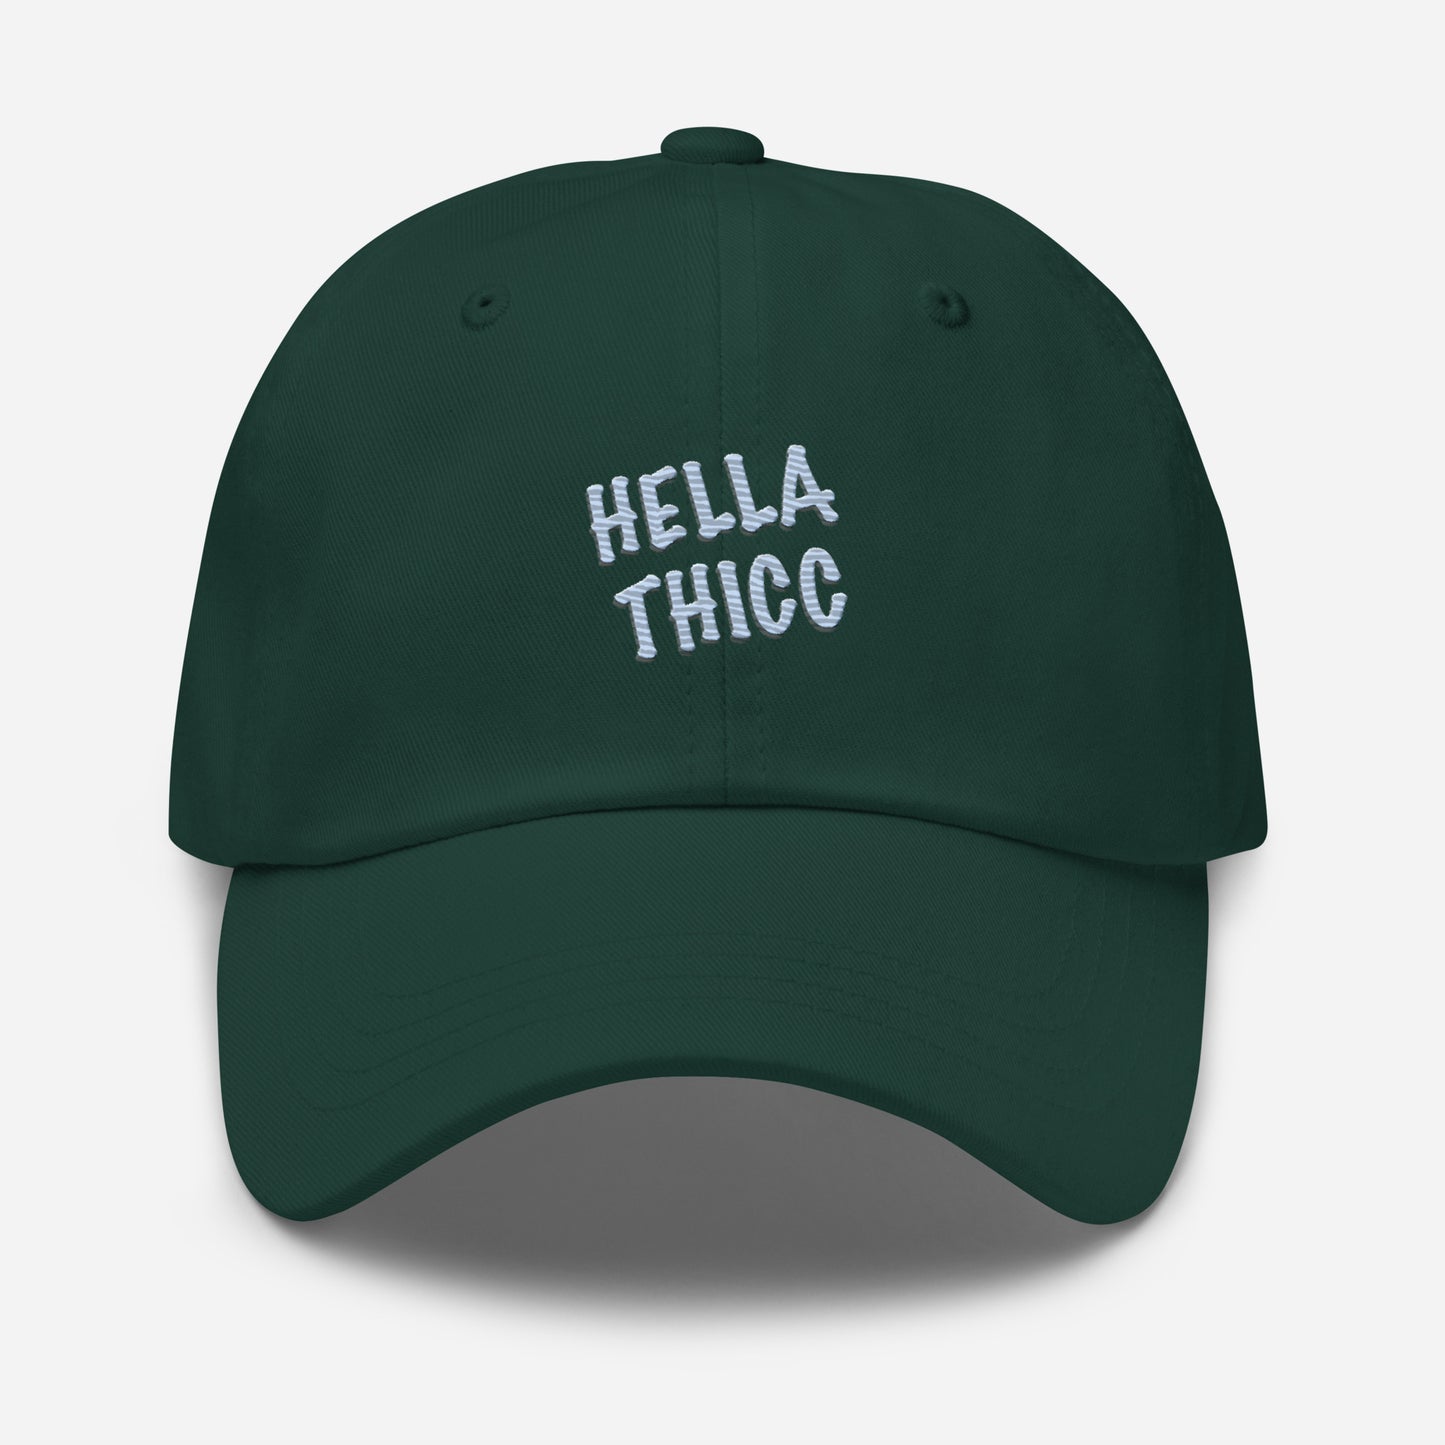 Hella Thicc Dad hat